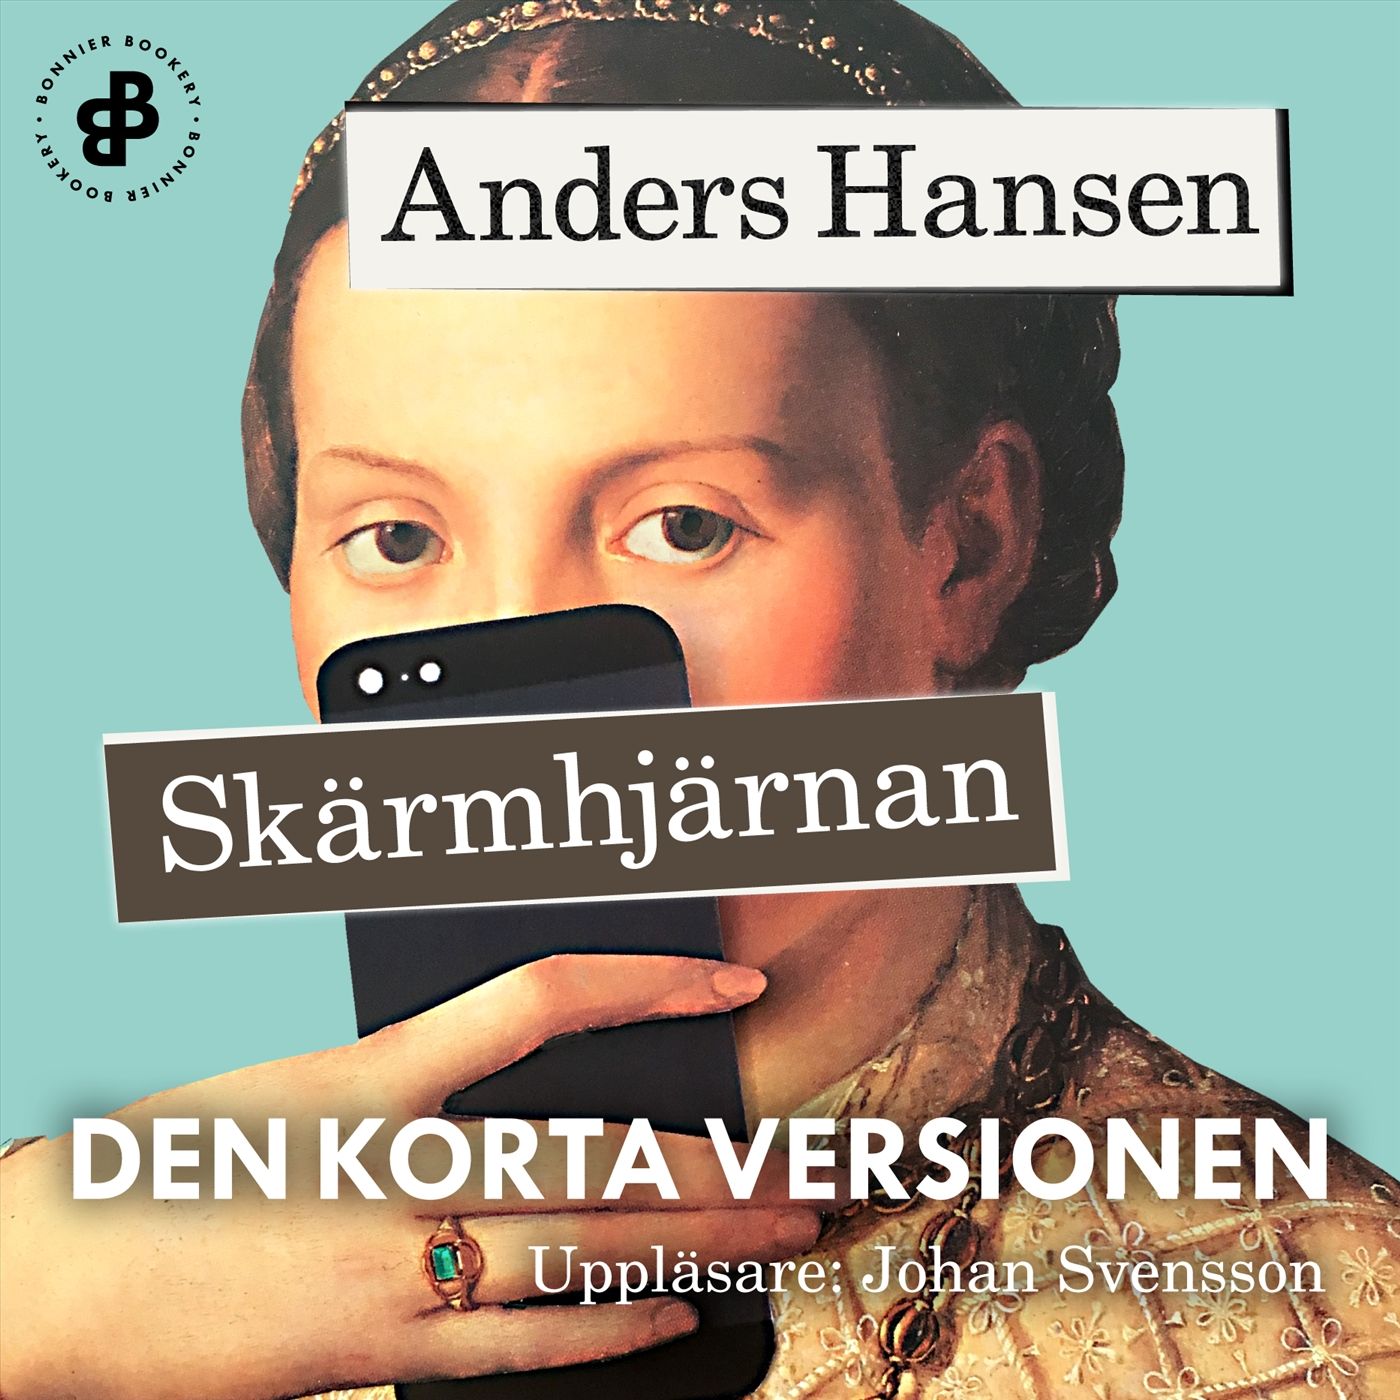 Skärmhjärnan. Den korta versionen, audiobook by Anders Hansen